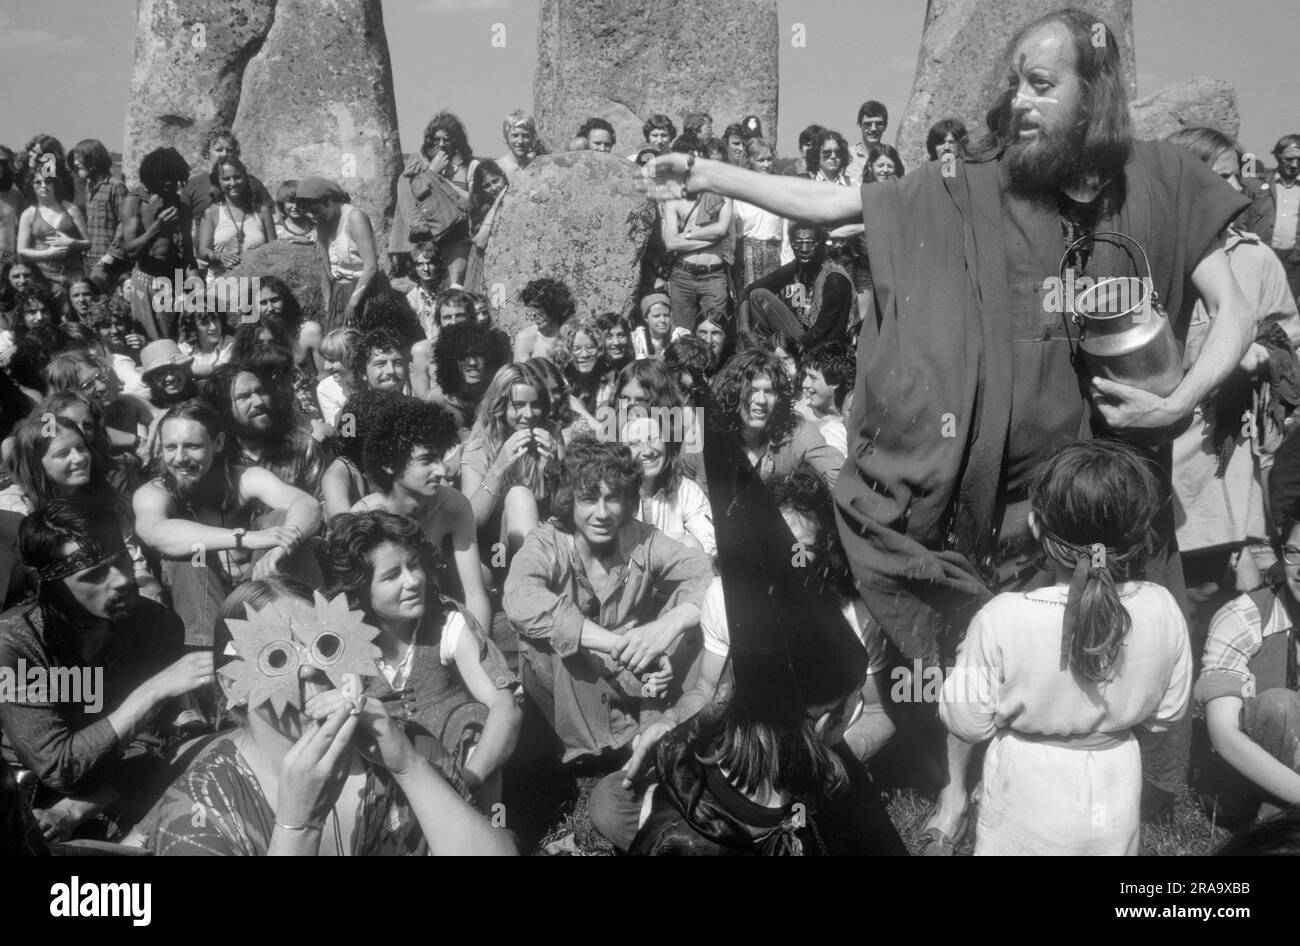 Stonehenge Free Festival au solstice d'été, Wiltshire, Angleterre 21 juin 1979. Les hippies des années 1970 assistent au festival gratuit de Stonehenge pour célébrer le solstice d'été. Une femme hippie portant un masque célèbre le dieu du soleil Belenus. SID Rawle, connu sous le nom de roi des Hippies, arrose le groupe avec de l'eau comme bénédiction. 70S ROYAUME-UNI HOMER SYKES Banque D'Images